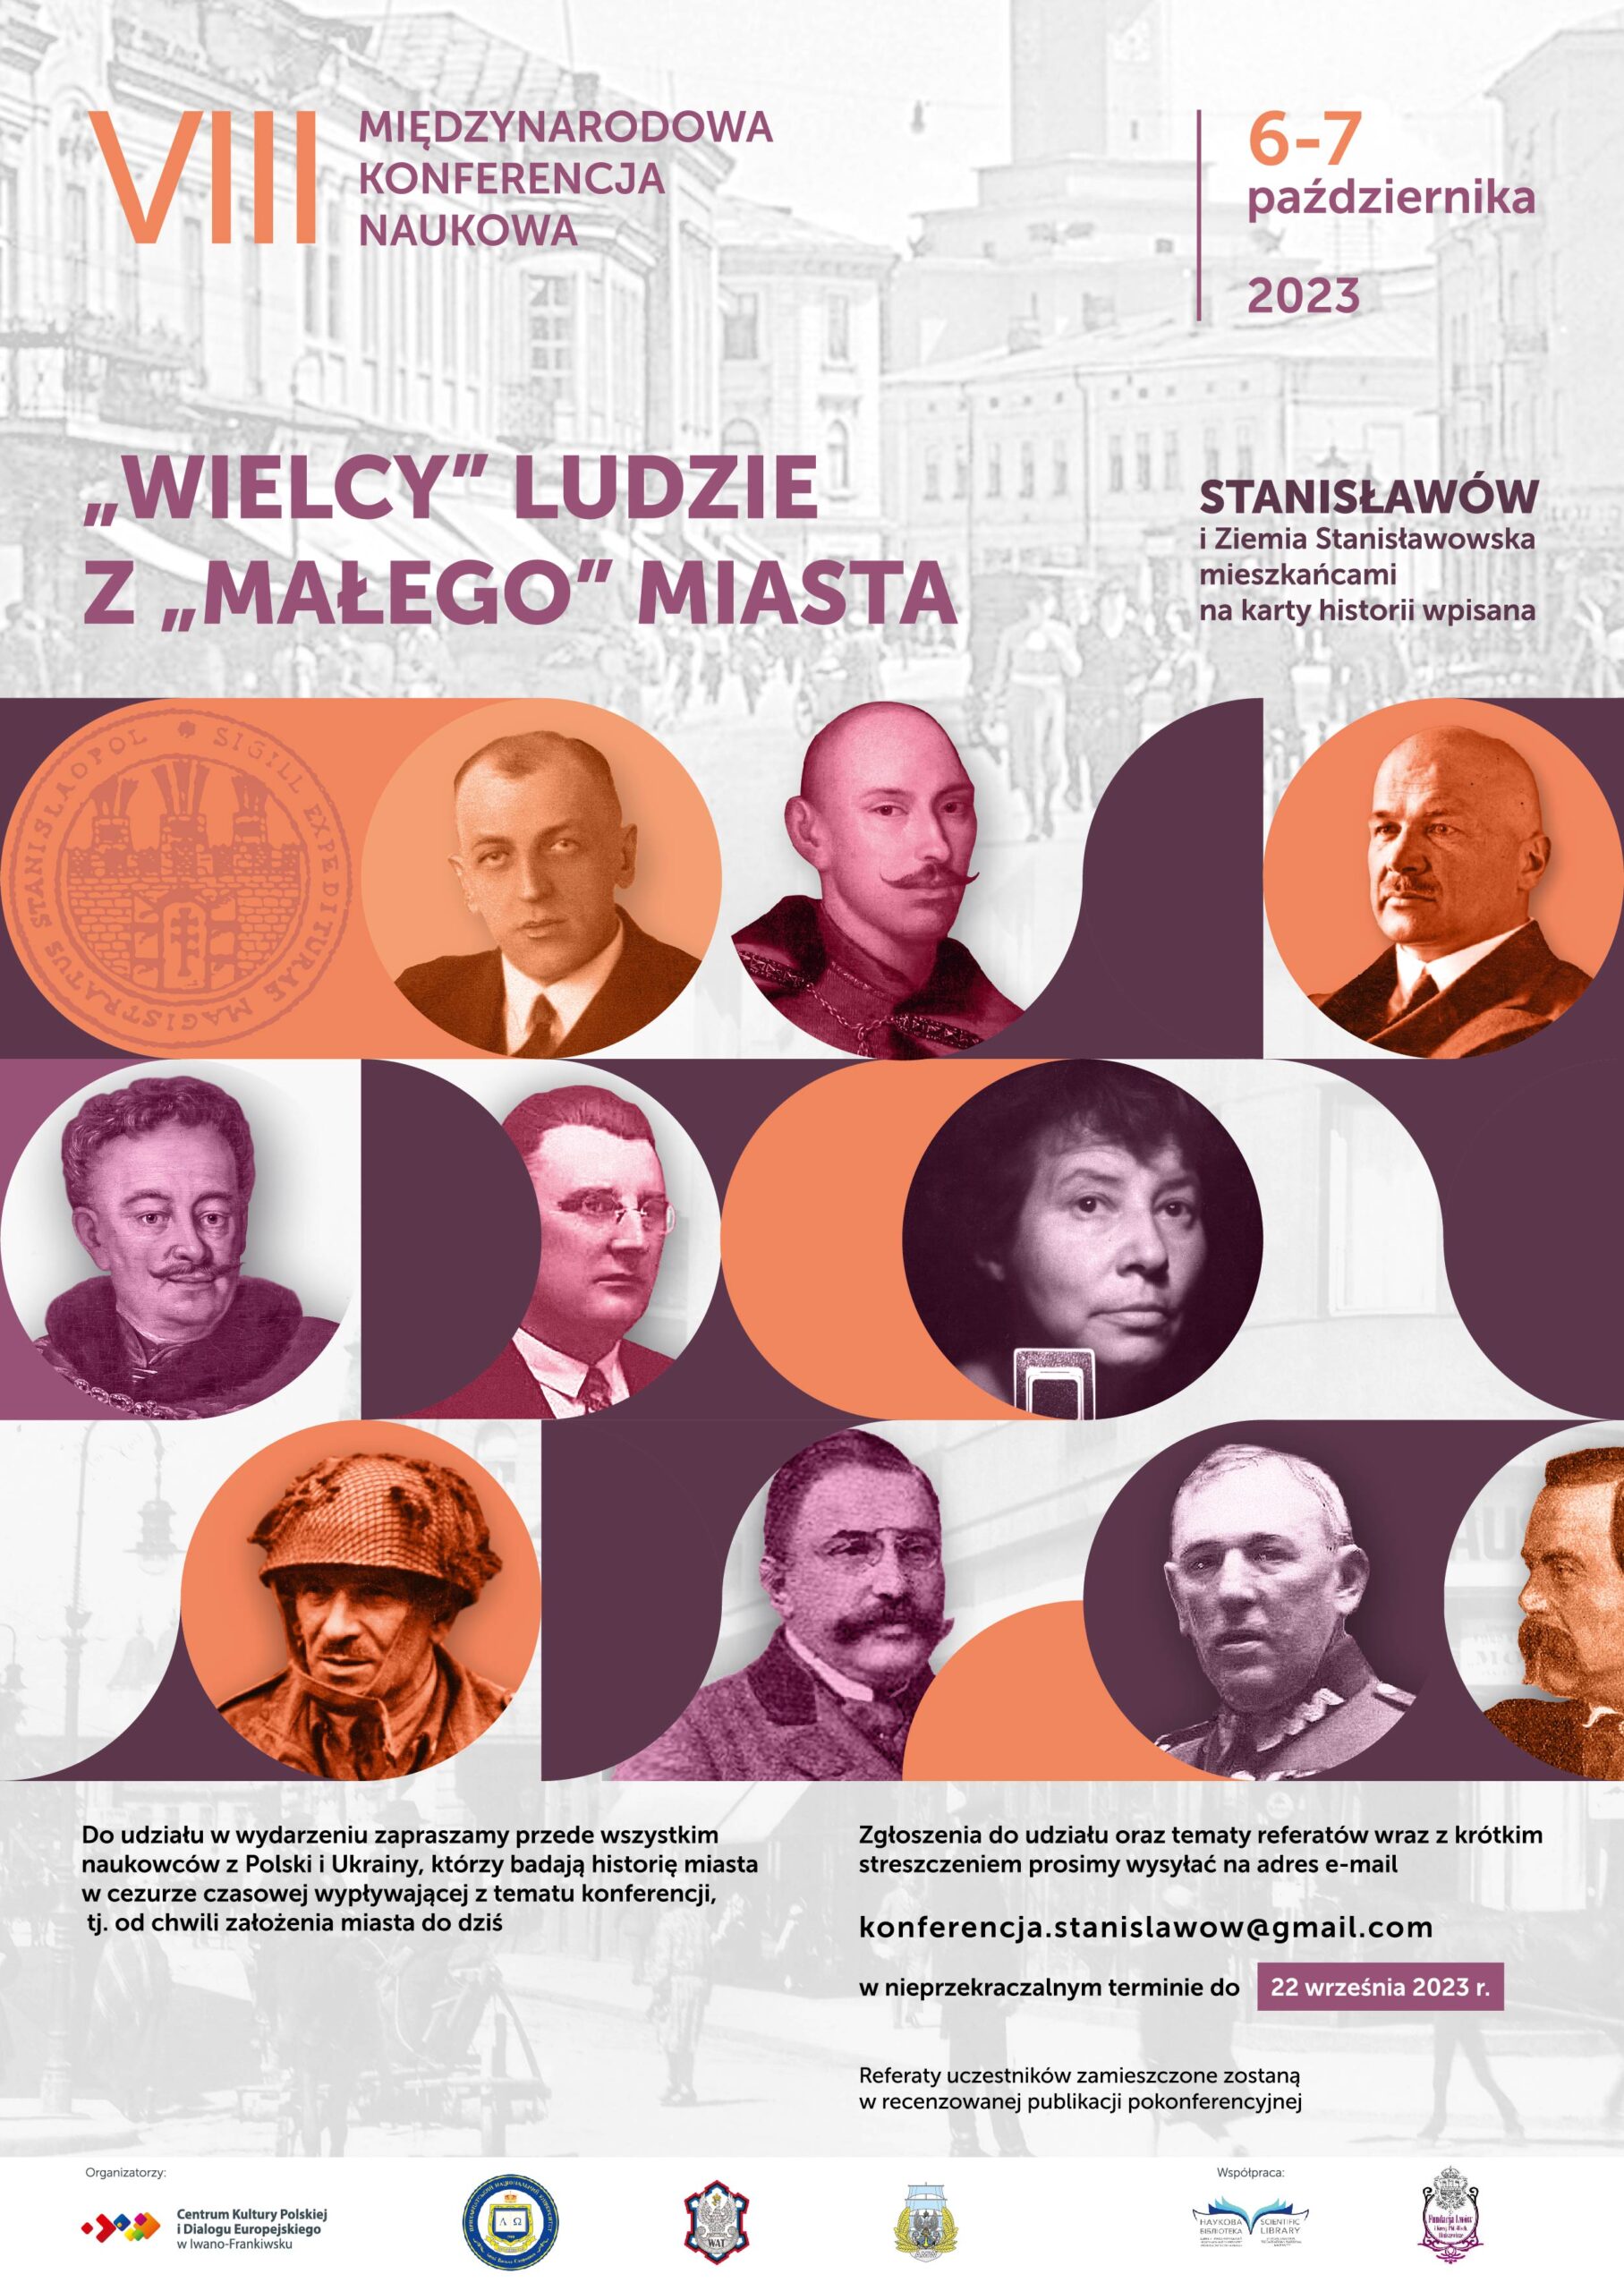 VIII Międzynarodowa Konferencja Naukowa „Stanisławów i Ziemia Stanisławowska”